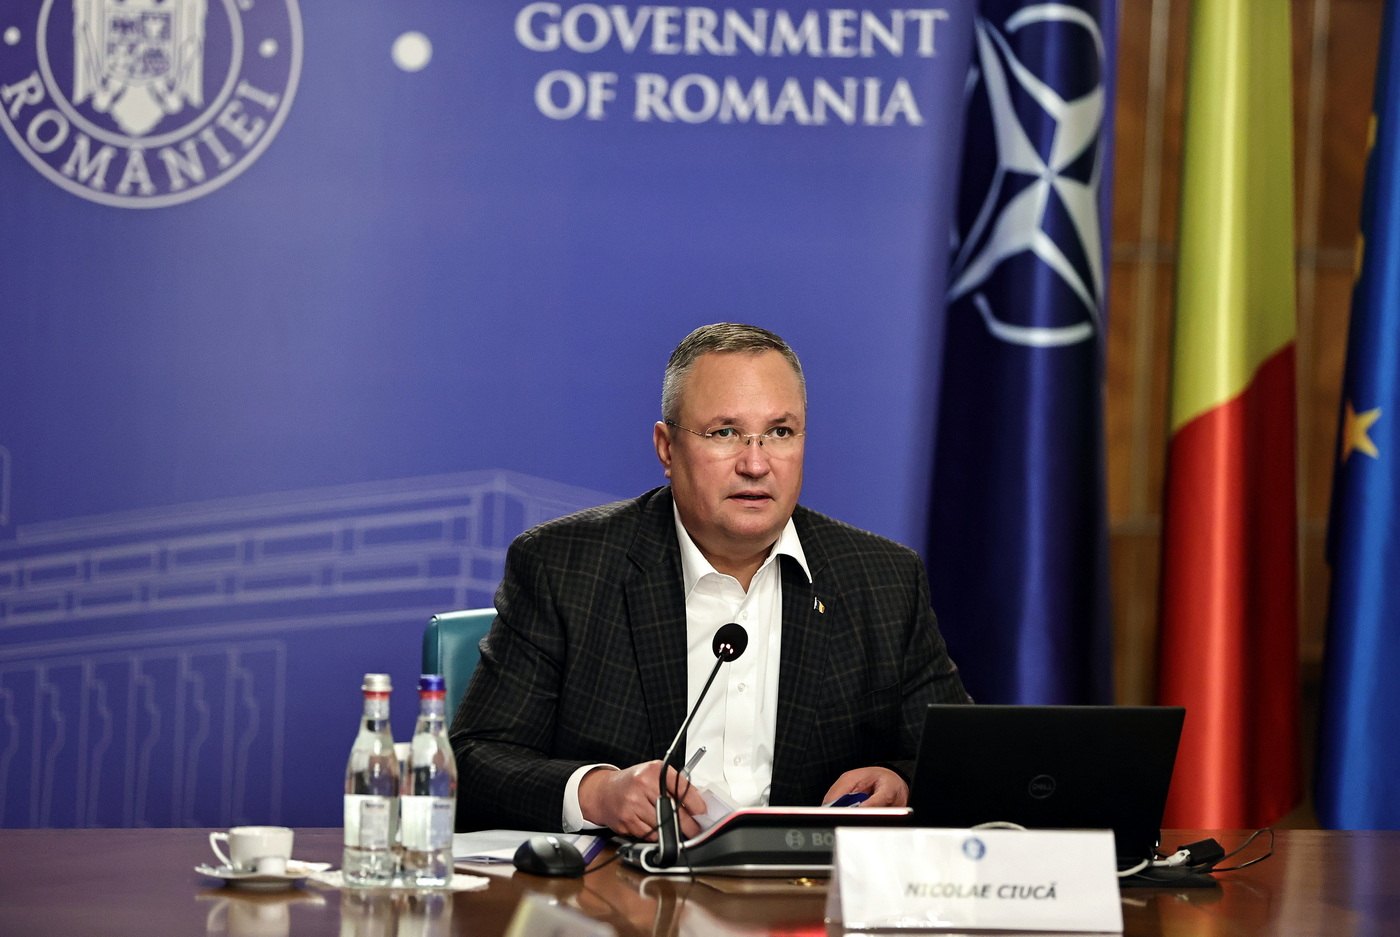 Nicolae Ciucă: pénteken lemondok a megállapodásnak megfelelően